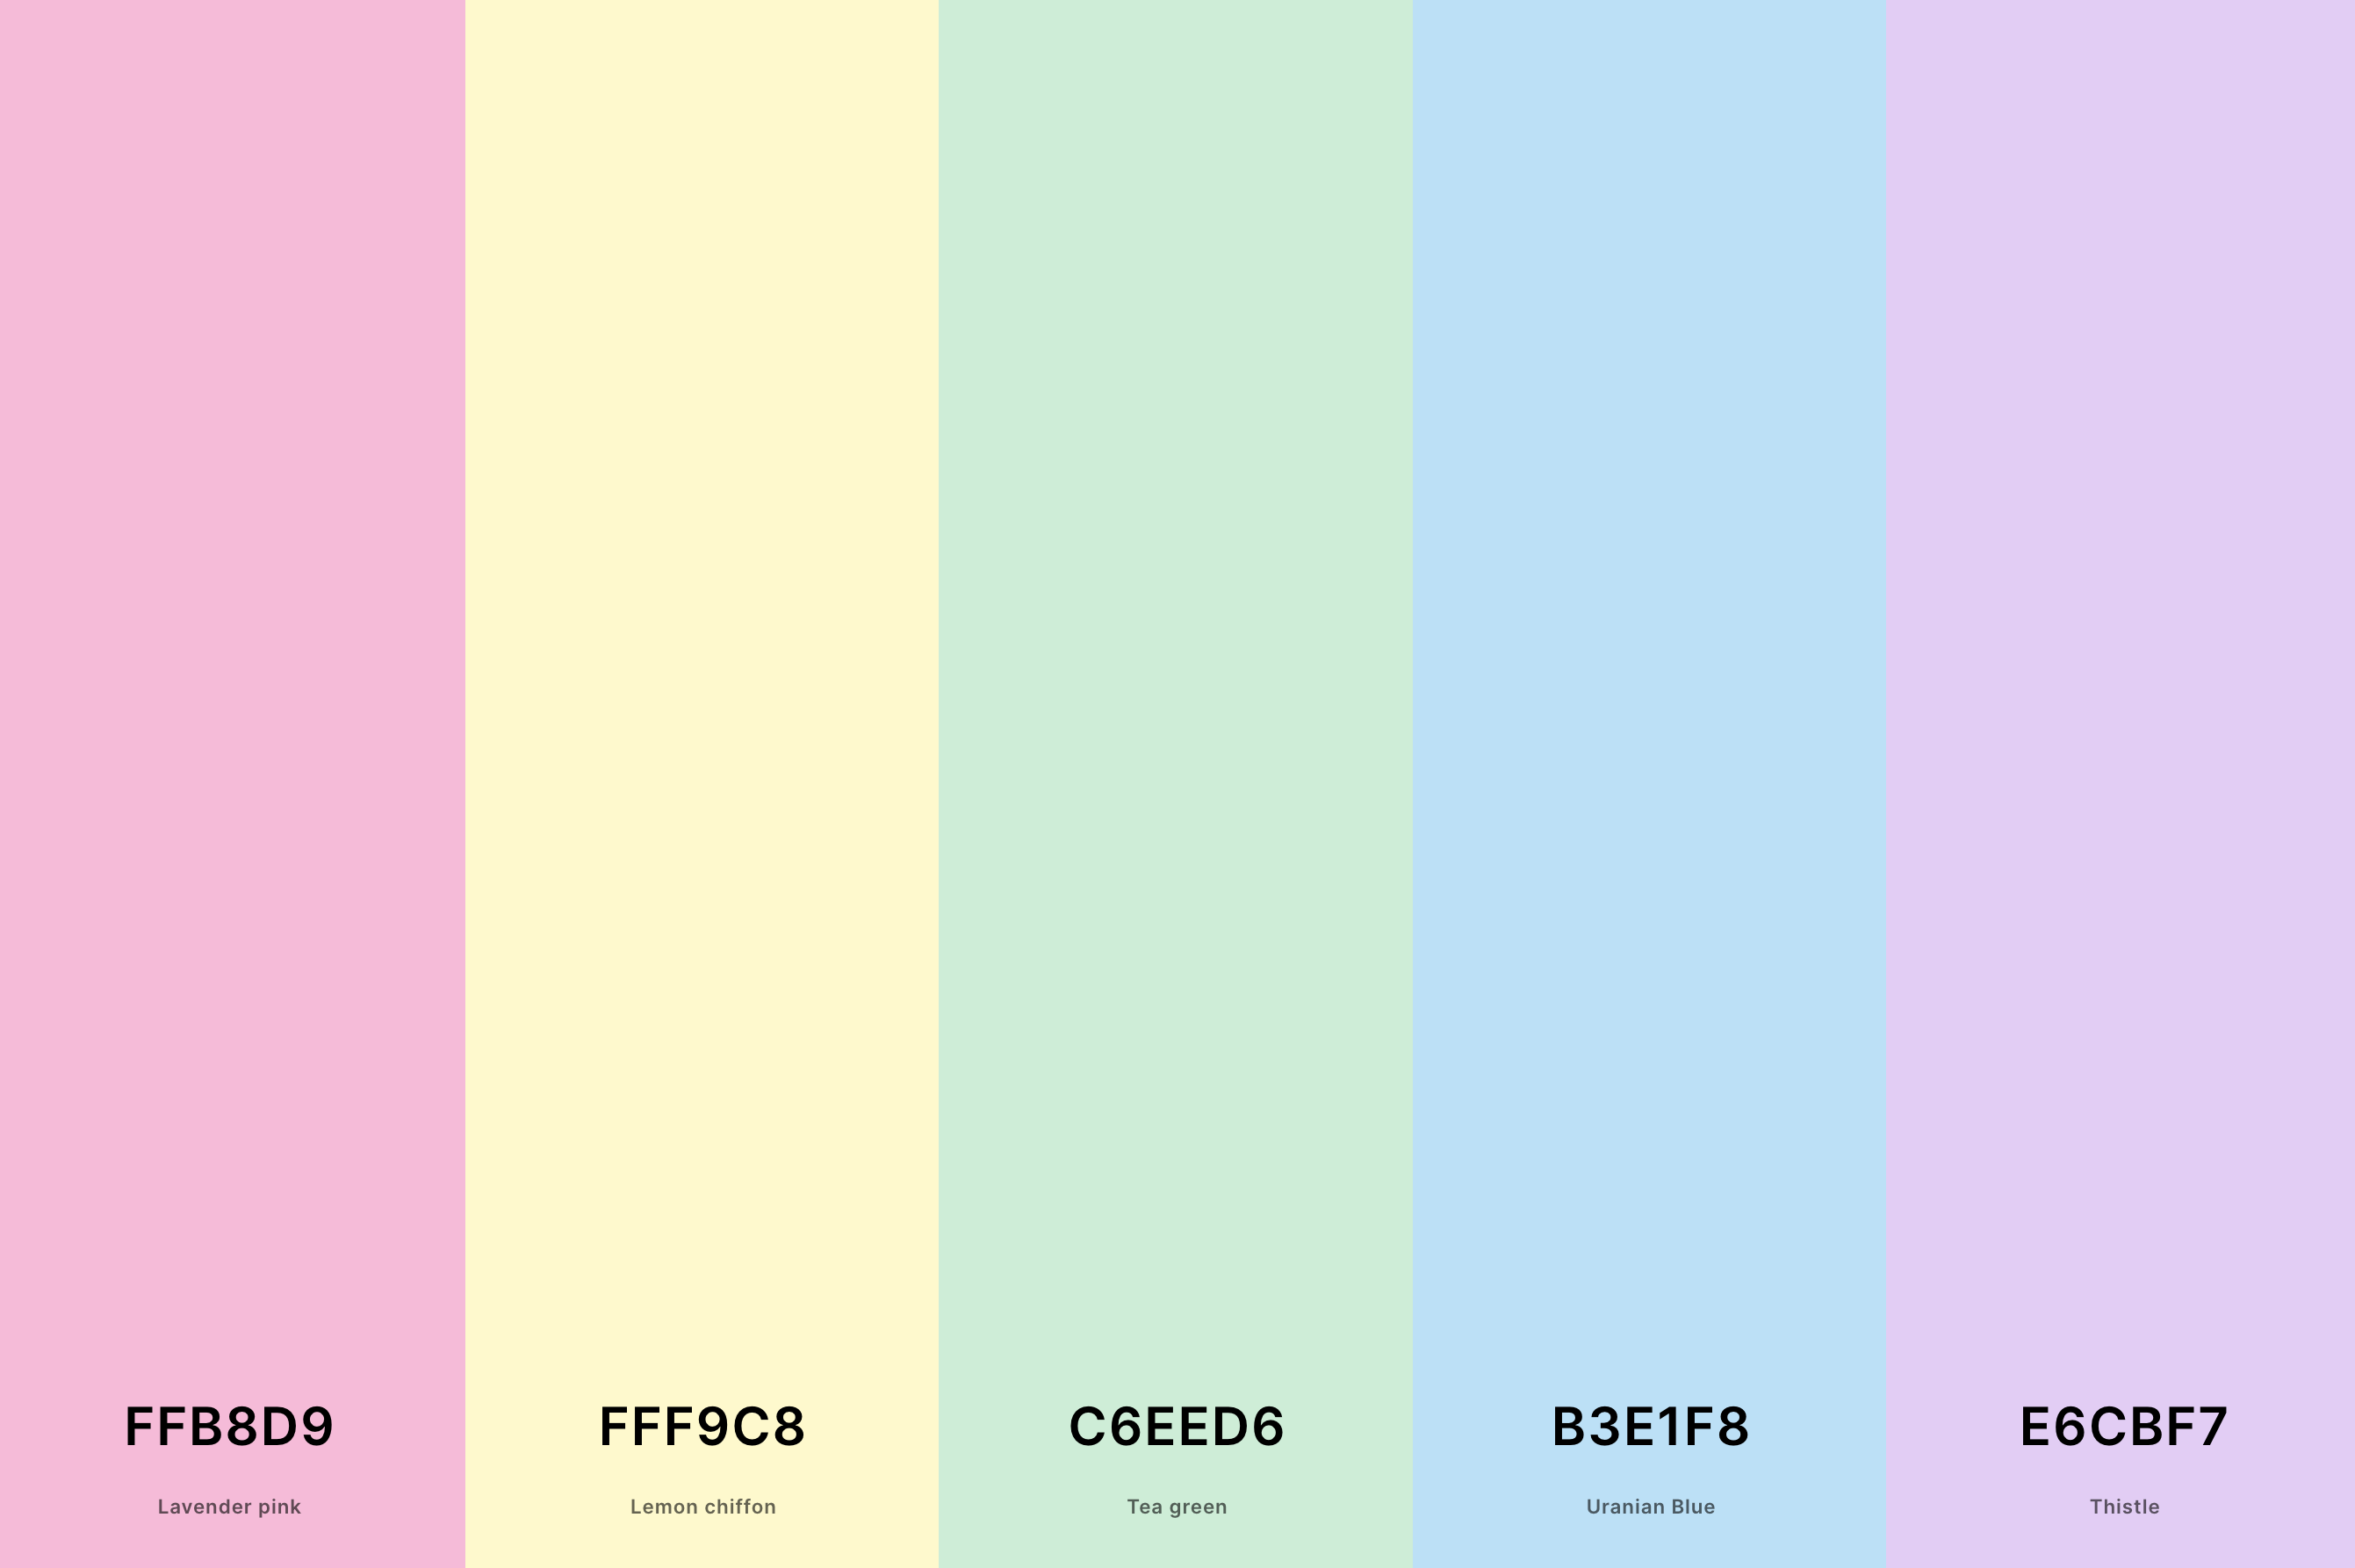 20. Soft Pastel Color Palette Color Palette with Lavender Pink (Hex #FFB8D9) + Lemon Chiffon (Hex #FFF9C8) + Tea Green (Hex #C6EED6) + Uranian Blue (Hex #B3E1F8) + Thistle (Hex #E6CBF7) Color Palette with Hex Codes